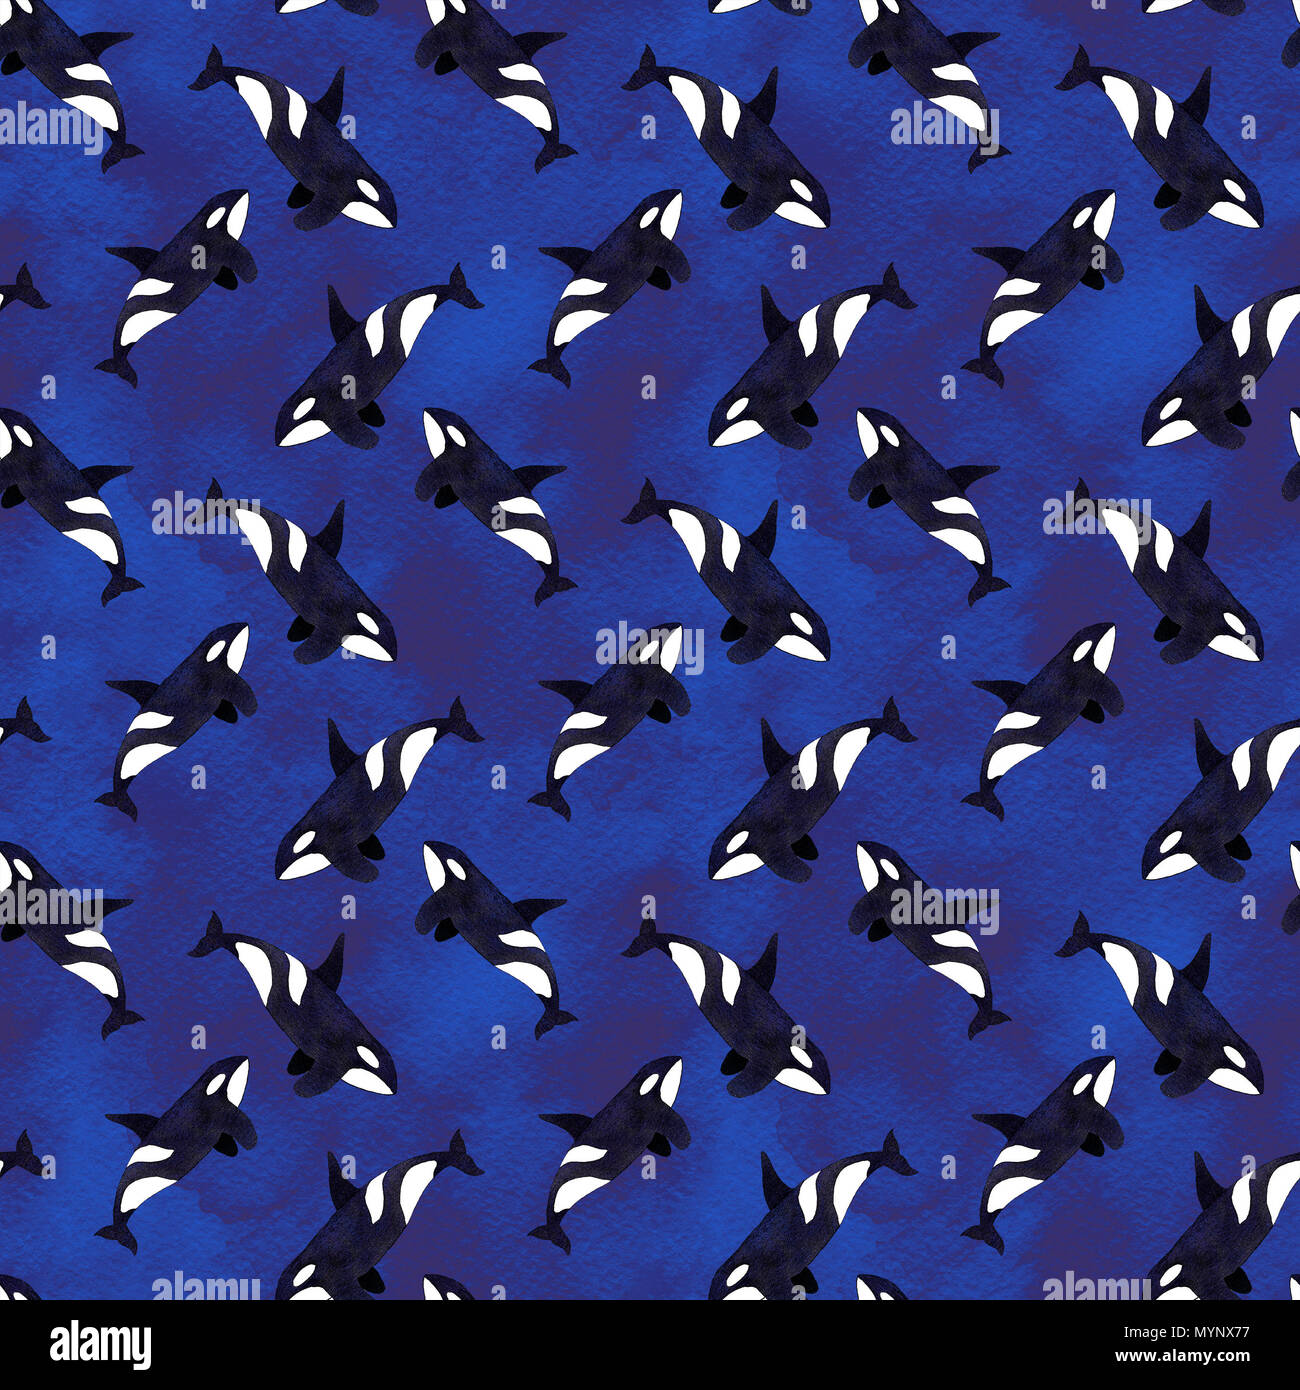 Épaulard ou orque seamless pattern, avec fond d'animal dessiné à la main - Orcinus orca sur le bleu profond de l'arrière-plan lavé. Aquarelle dessin réel. Banque D'Images